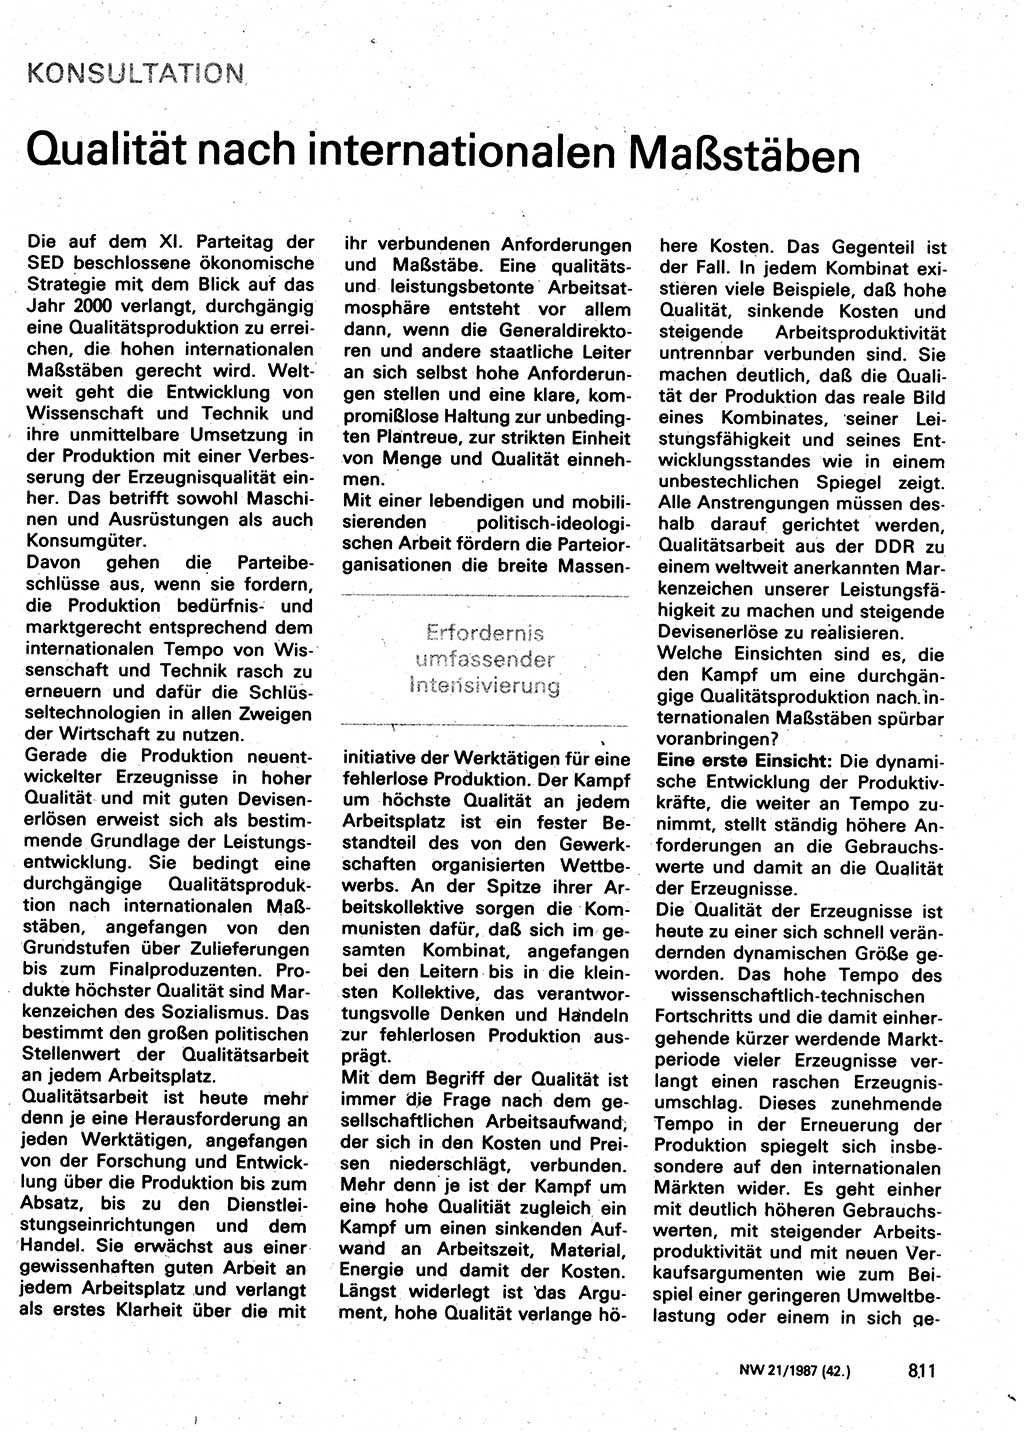 Neuer Weg (NW), Organ des Zentralkomitees (ZK) der SED (Sozialistische Einheitspartei Deutschlands) für Fragen des Parteilebens, 42. Jahrgang [Deutsche Demokratische Republik (DDR)] 1987, Seite 811 (NW ZK SED DDR 1987, S. 811)